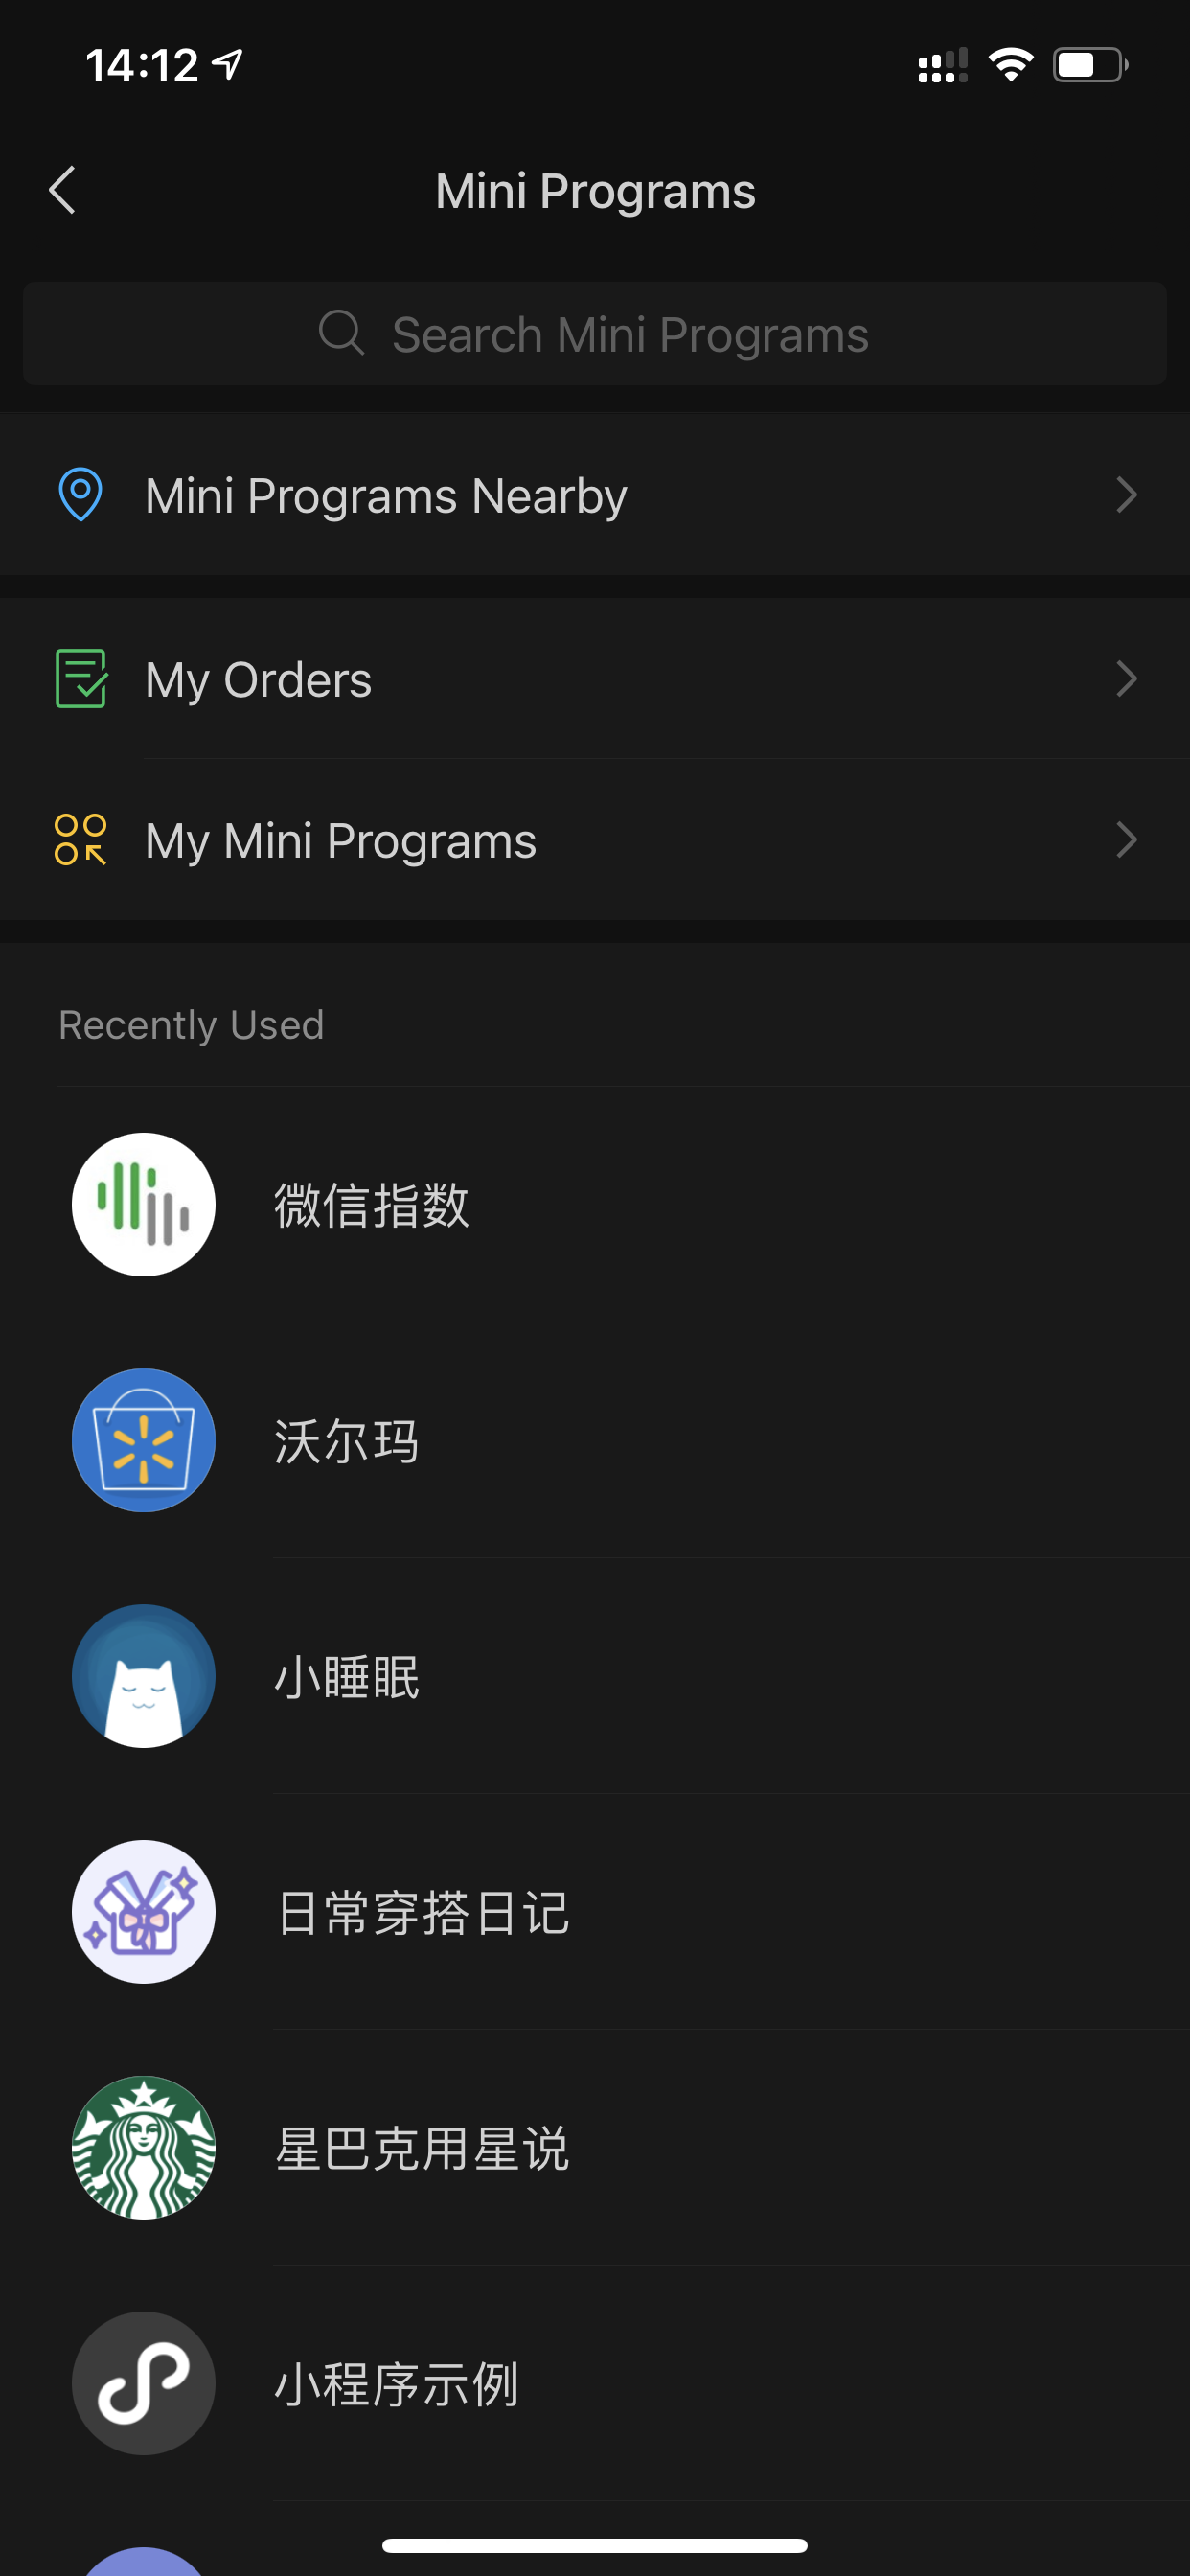 Liste des mini-applis lancées récemment dans la super-appli WeChat.